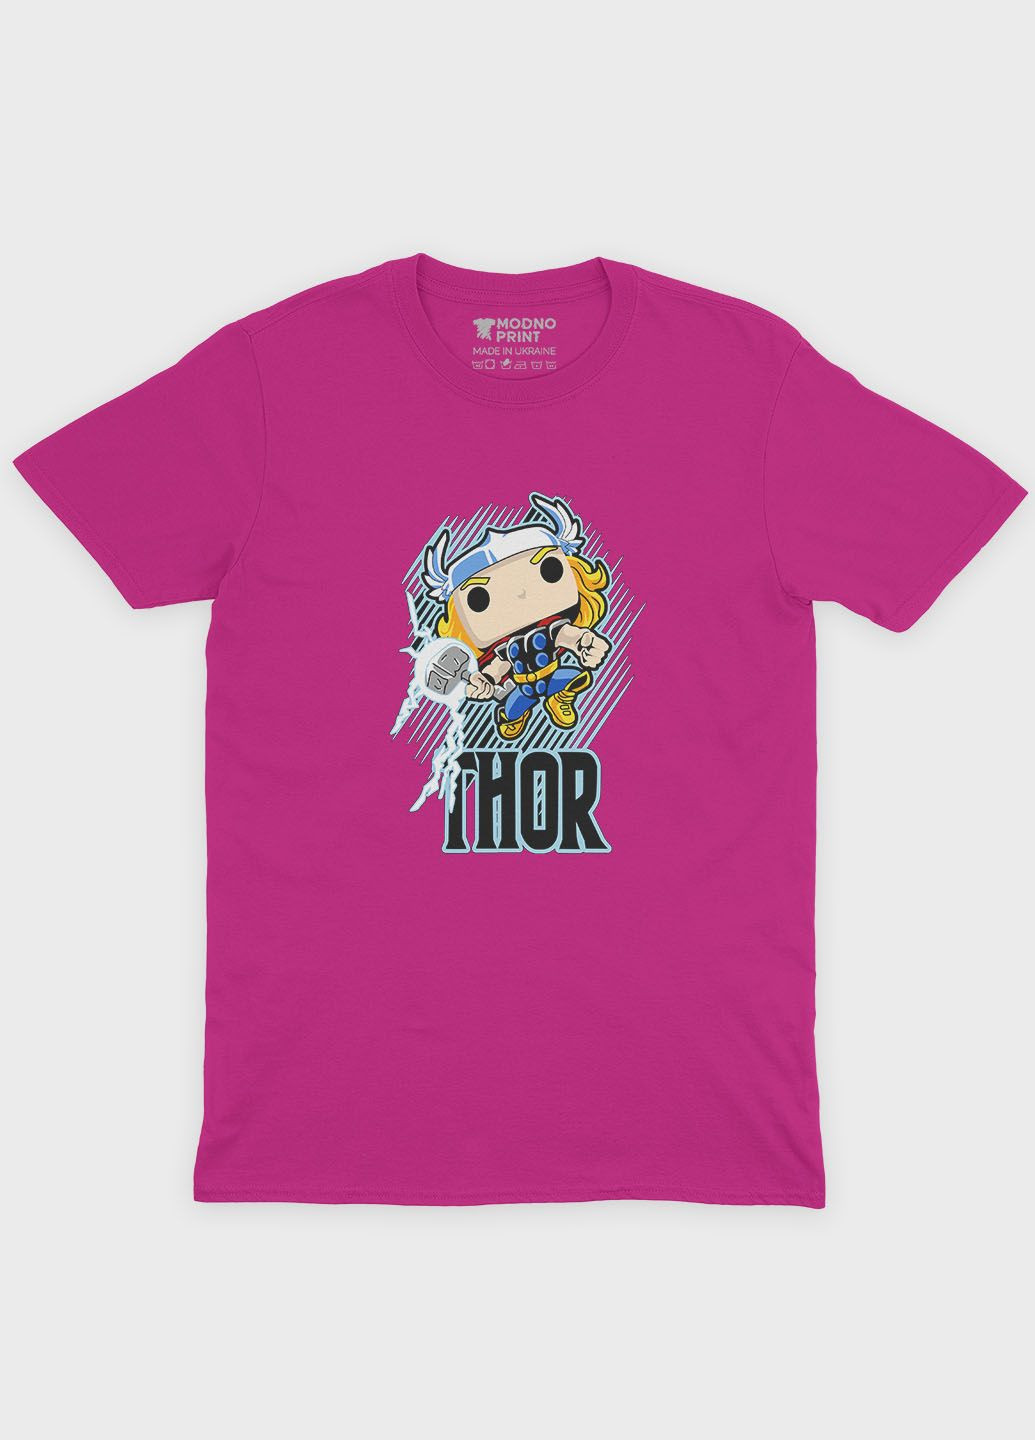 Рожева демісезонна футболка для дівчинки з принтом супергероя - тор (ts001-1-fuxj-006-024-003-g) Modno